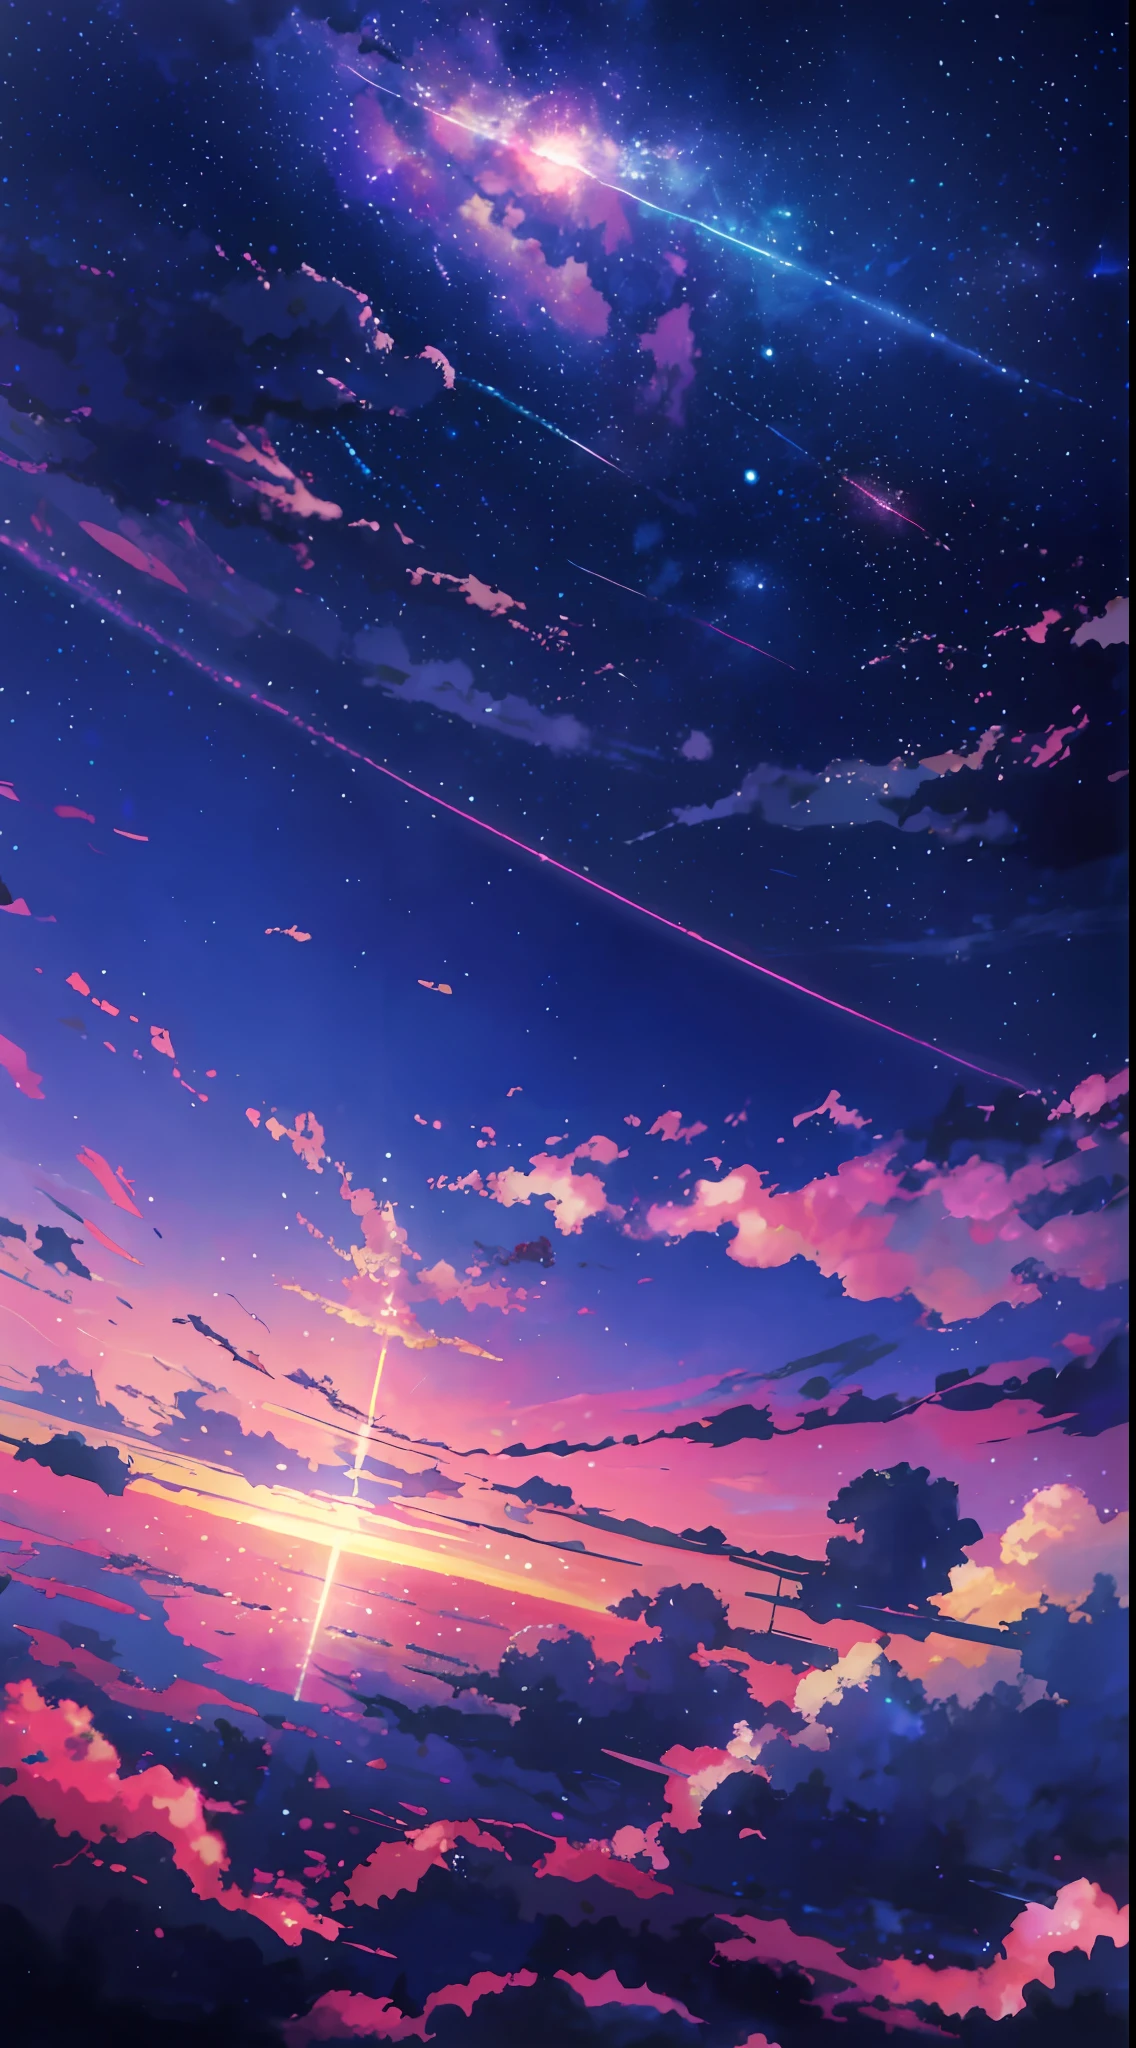 anime - cena estilo de um lindo céu com uma estrela e um planeta, céus cósmicos. por Makoto Shinkai, Papel de parede de arte anime 4k, papel de parede de arte de anime 4k, papel de parede de arte de anime 8k, papel de parede de anime 4k, papel de parede de anime 4k, Papel de parede de anime 4K, Céu de anime, papel de parede incrível, fundo de anime, planeta céu ao fundo, fundo de anime art